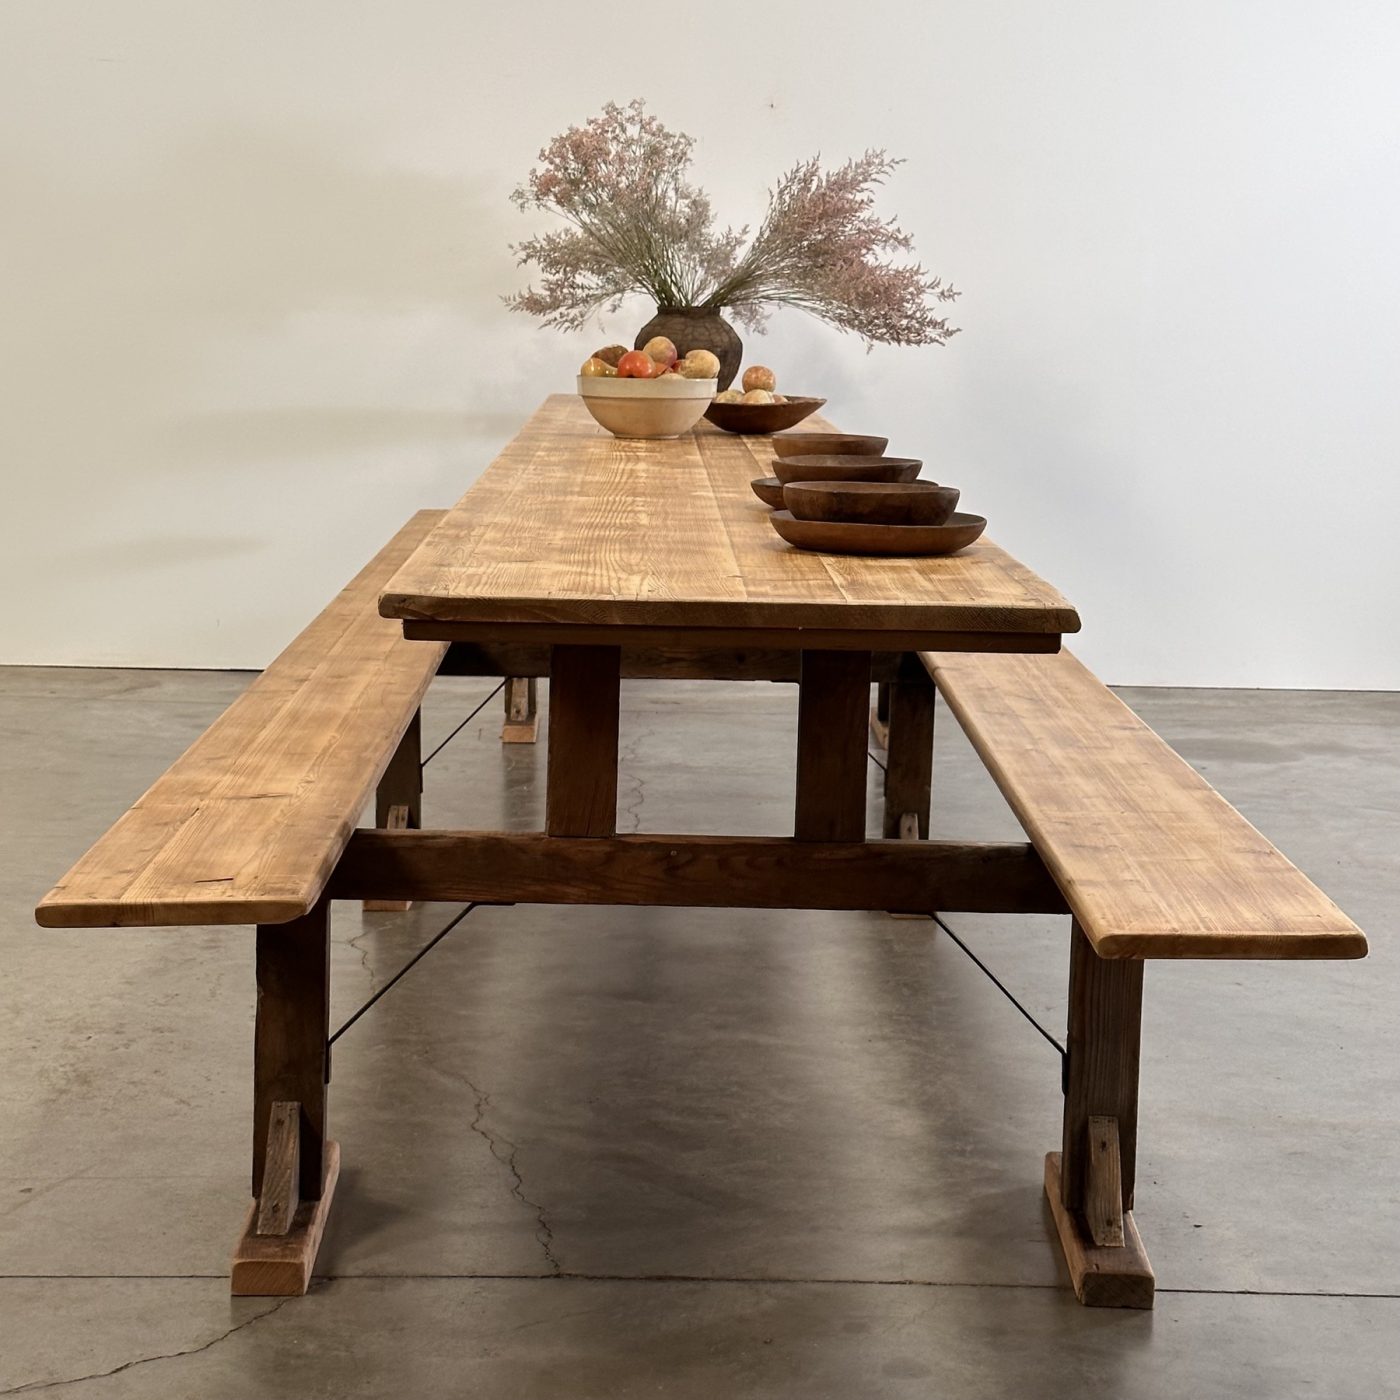 objet-vagabond-huge-table0006